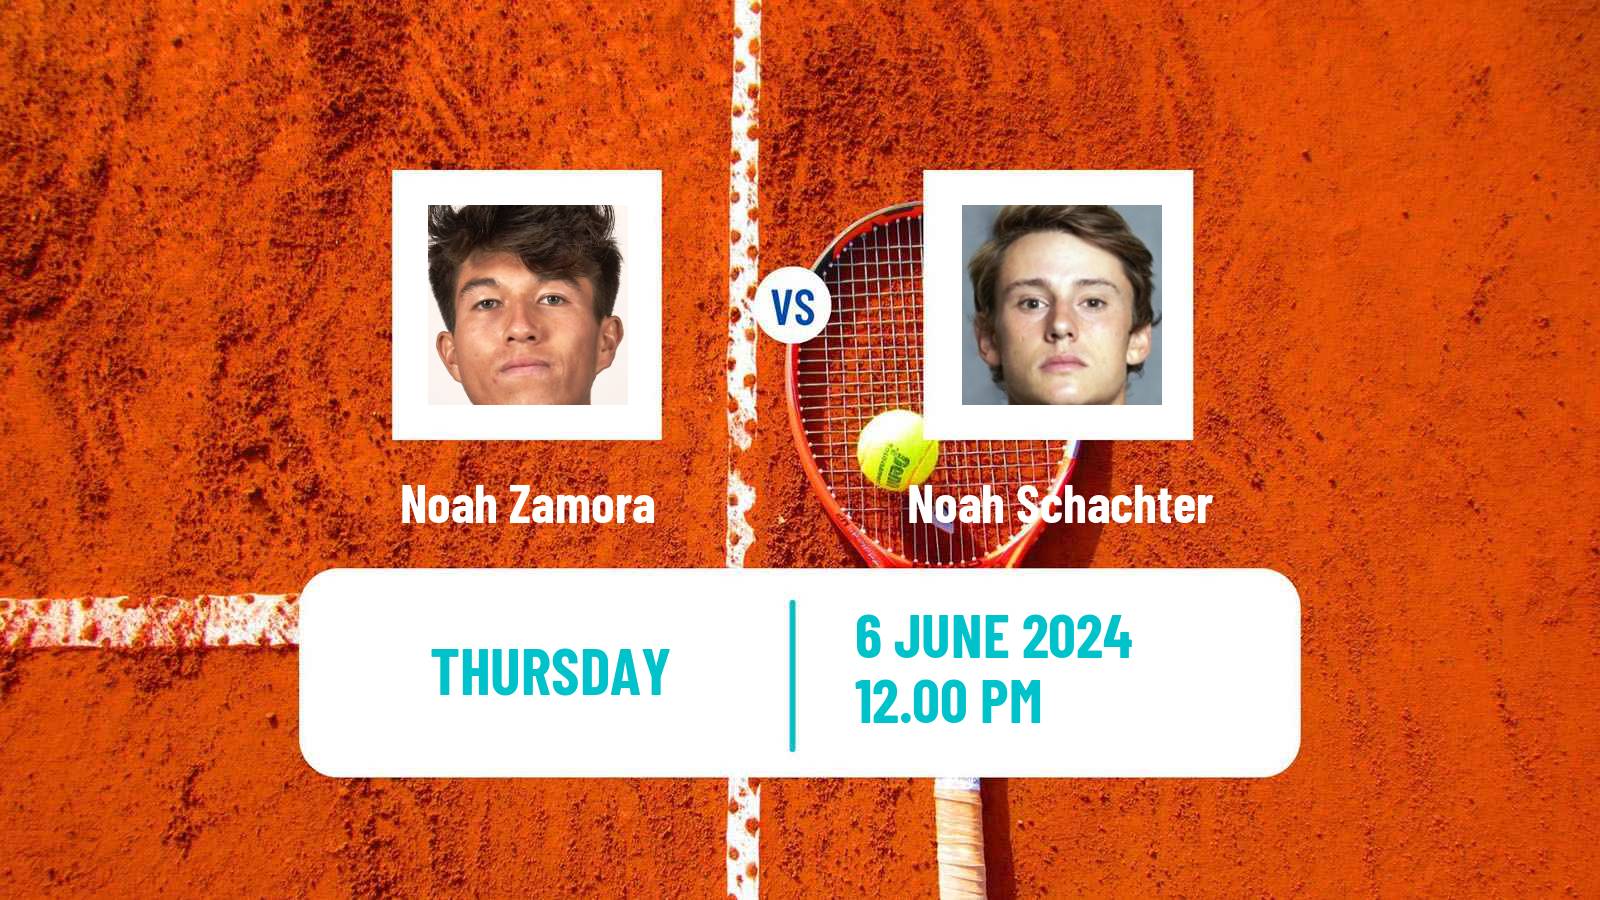 Tennis ITF M15 San Diego Ca 2 Men Noah Zamora - Noah Schachter